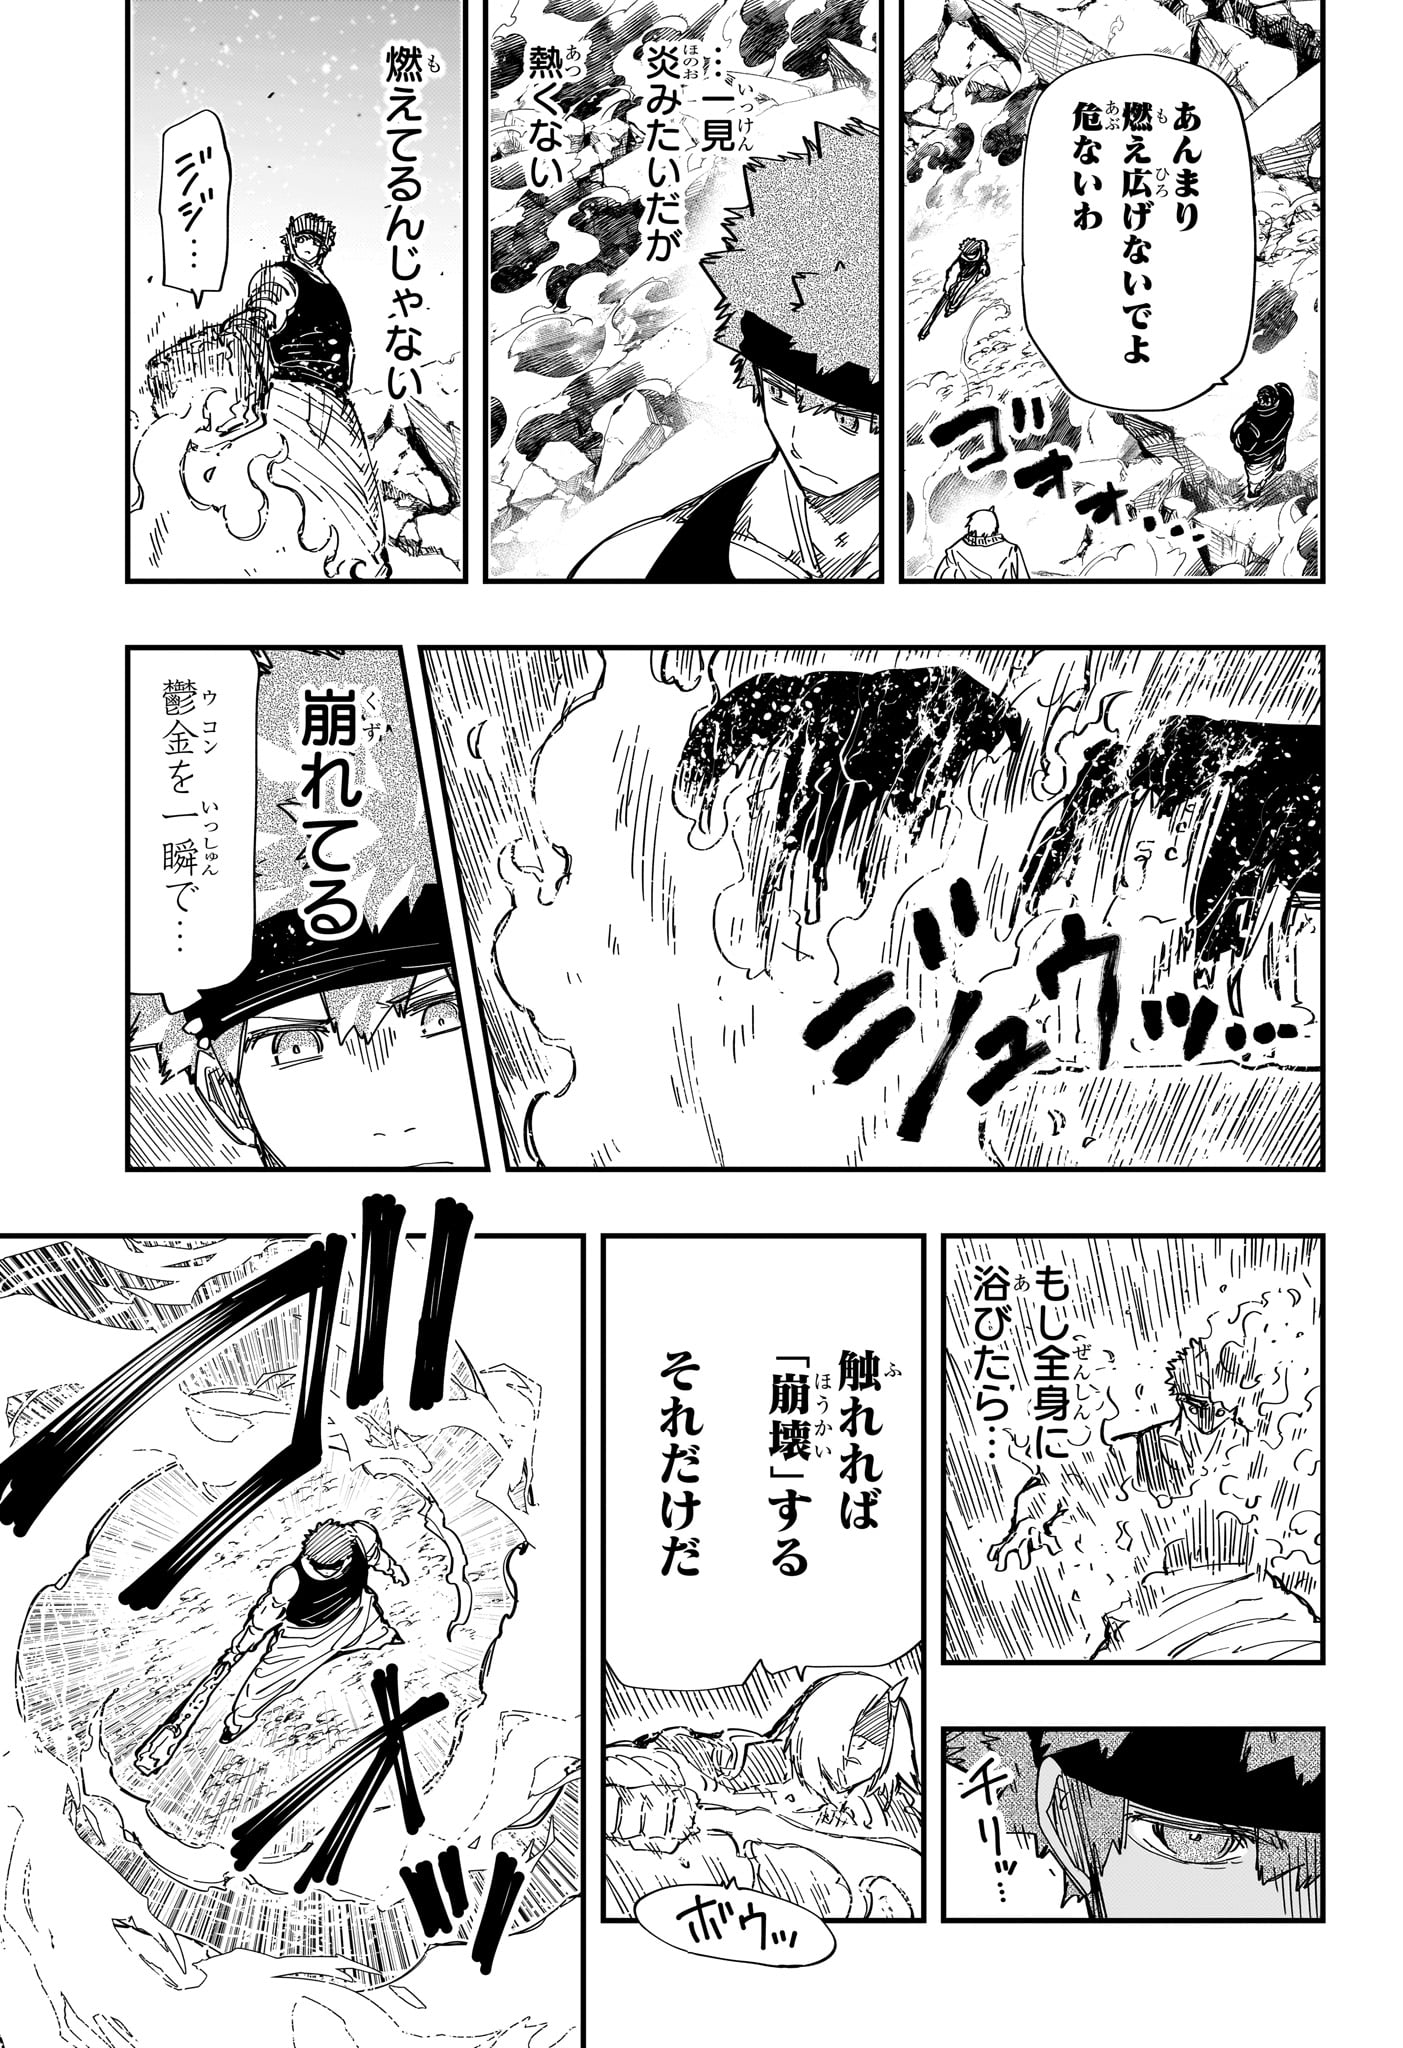 Yozakura-san Chi no Daisakusen - Chapter 235 - Page 3